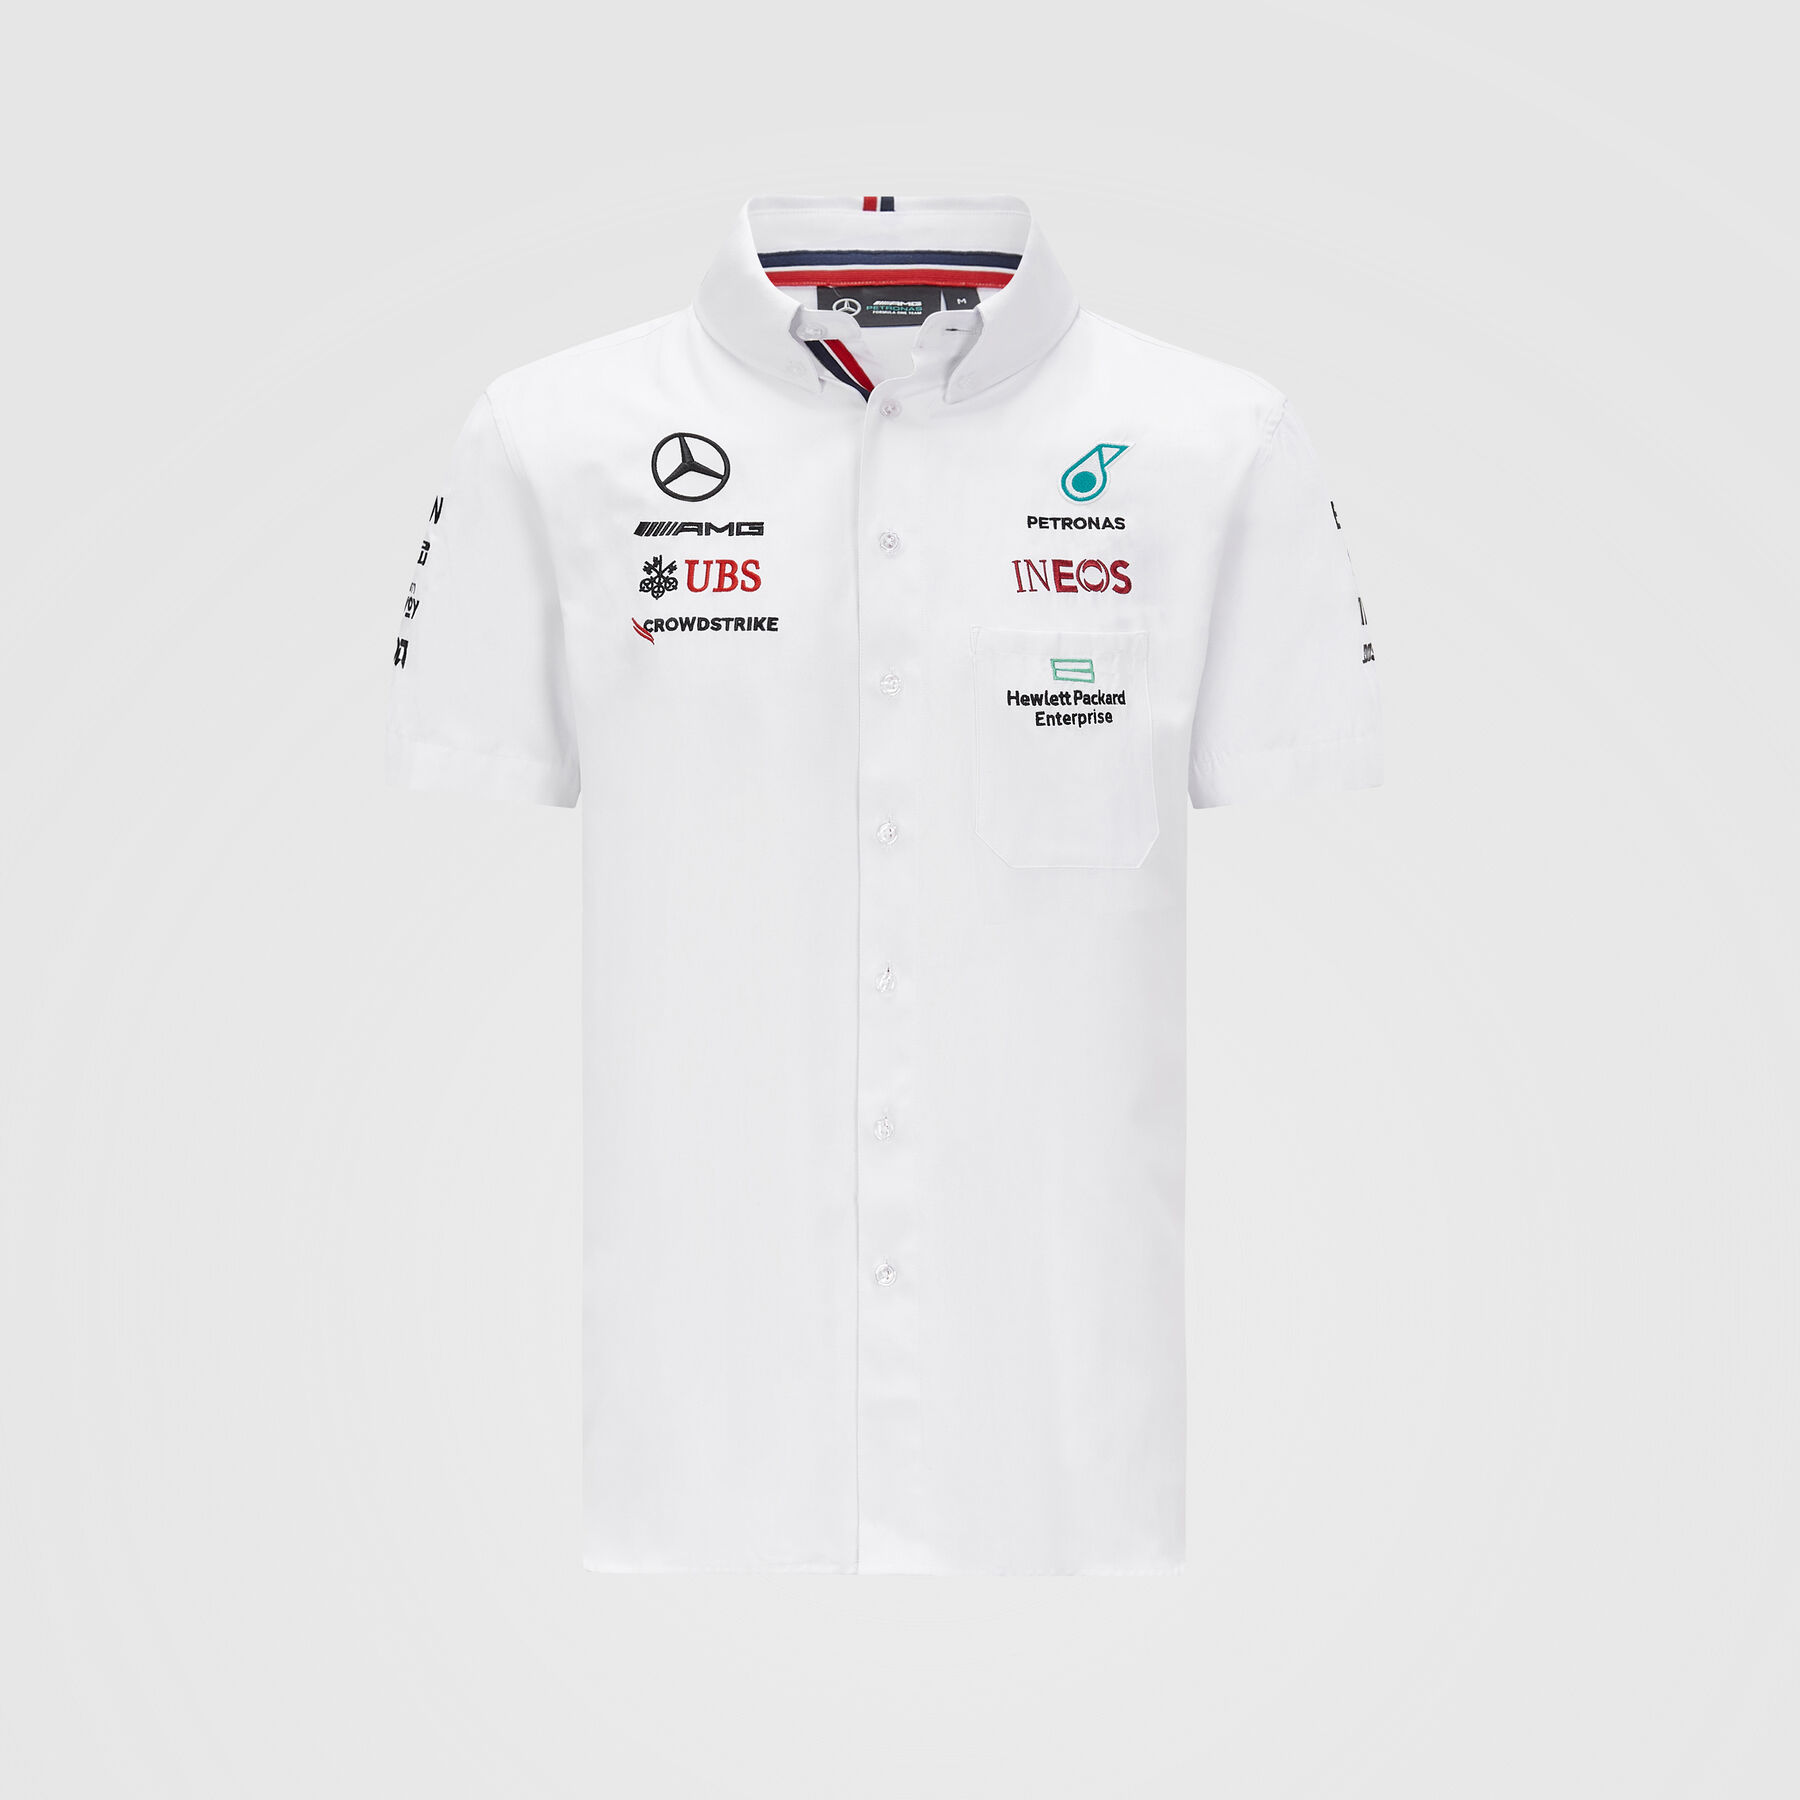 Unbekannt Mercedes AMG Team Langarmshirt 2021 weiß